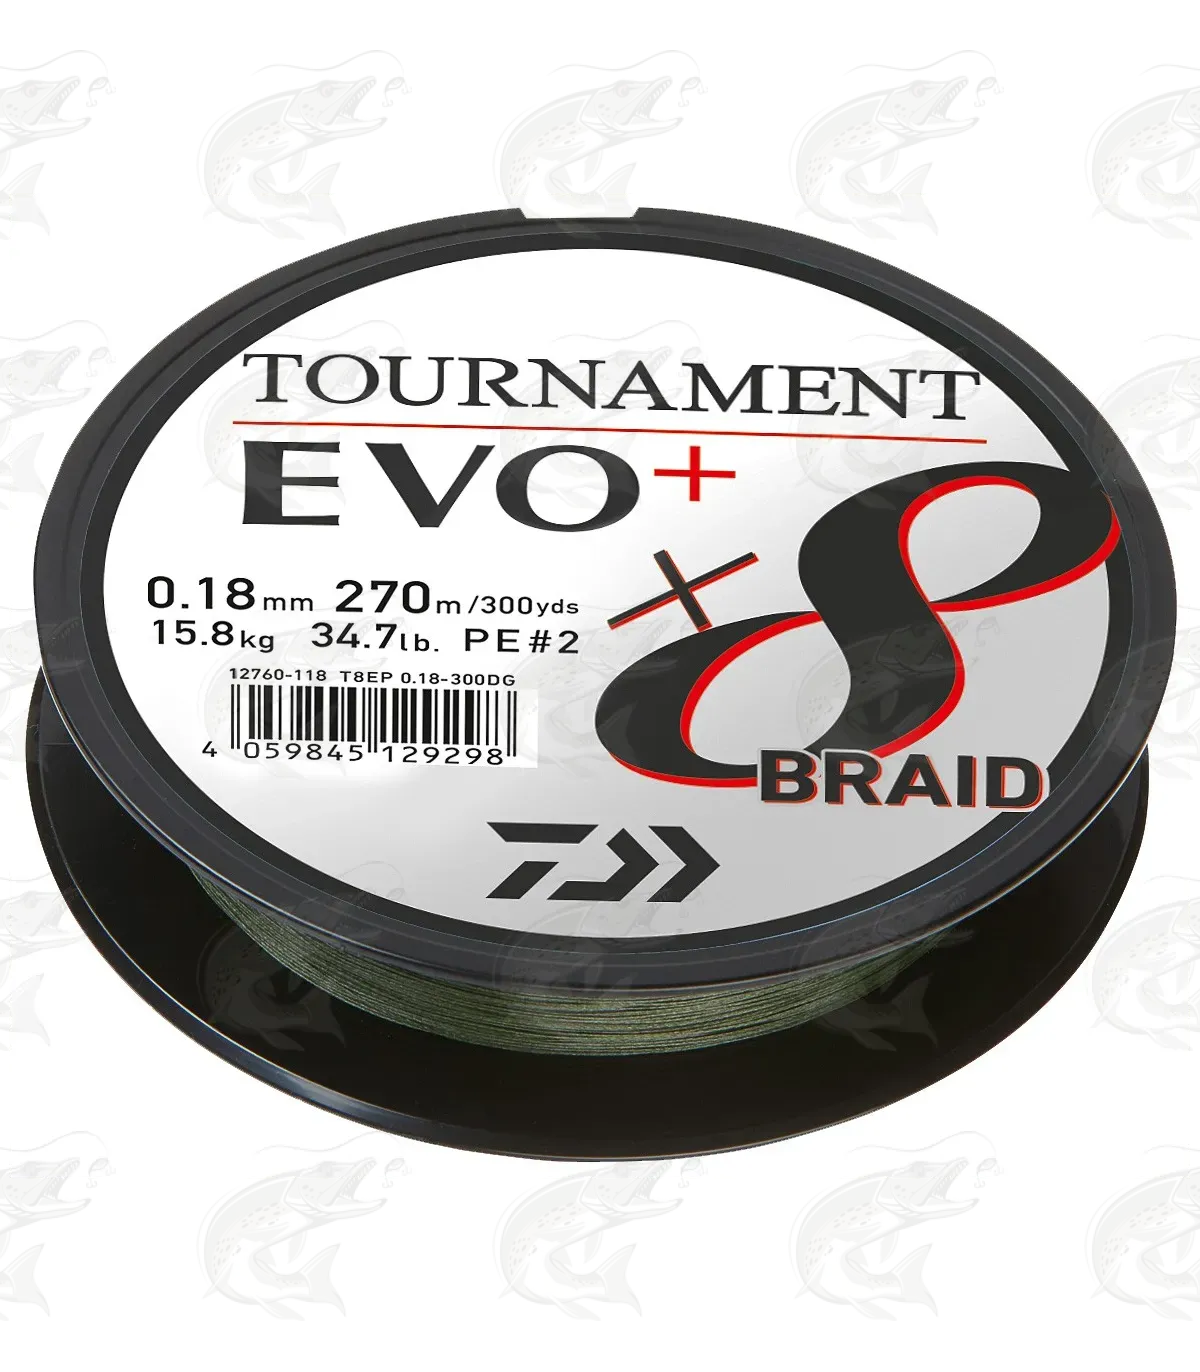 DAIWA Tournament x8 Braid EVO+ Braided Fishing Line multicolor